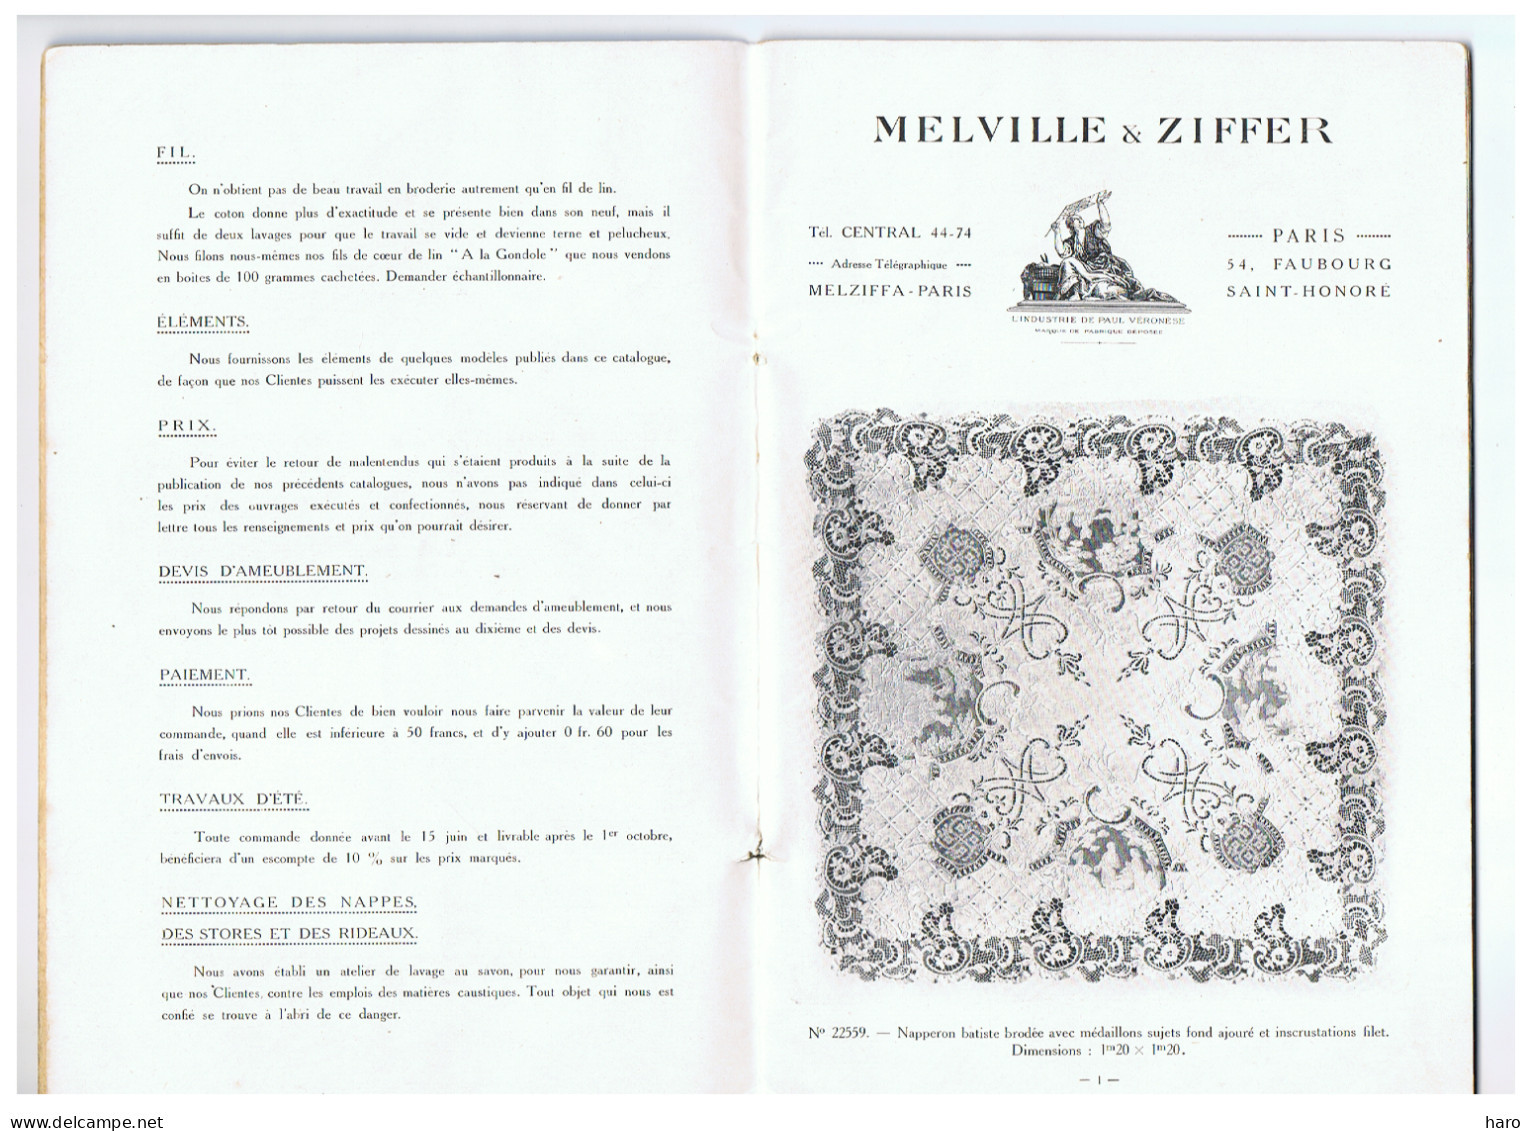 Livre édité Lors De L'ouverture Du Magasin De Broderie MELVILLE - ZIFFER En 1913..14 - Mode, Dentelle ,...PARIS ( FR114) - Mode